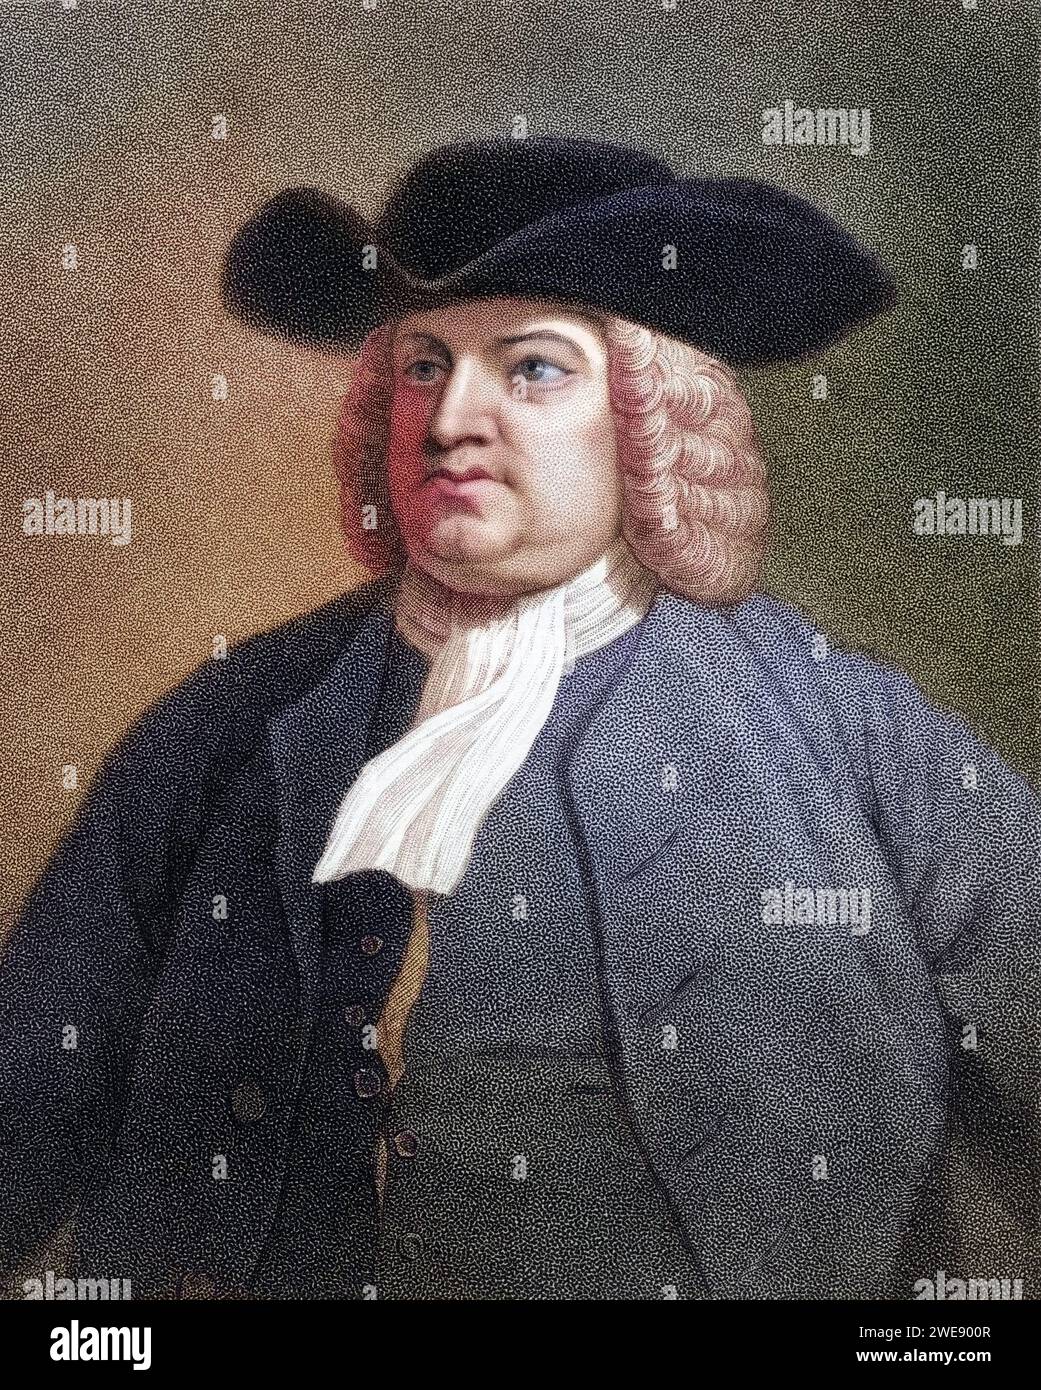 William Penn 1644-1718. Englischer Quäkerführer. Aus dem Buch Galleria di ritratti, veröffentlicht 1833., Historisch, digital restaurierte Reproduktion von einer Vorlage aus dem 19. Jahrhundert, data record non indicata Foto Stock